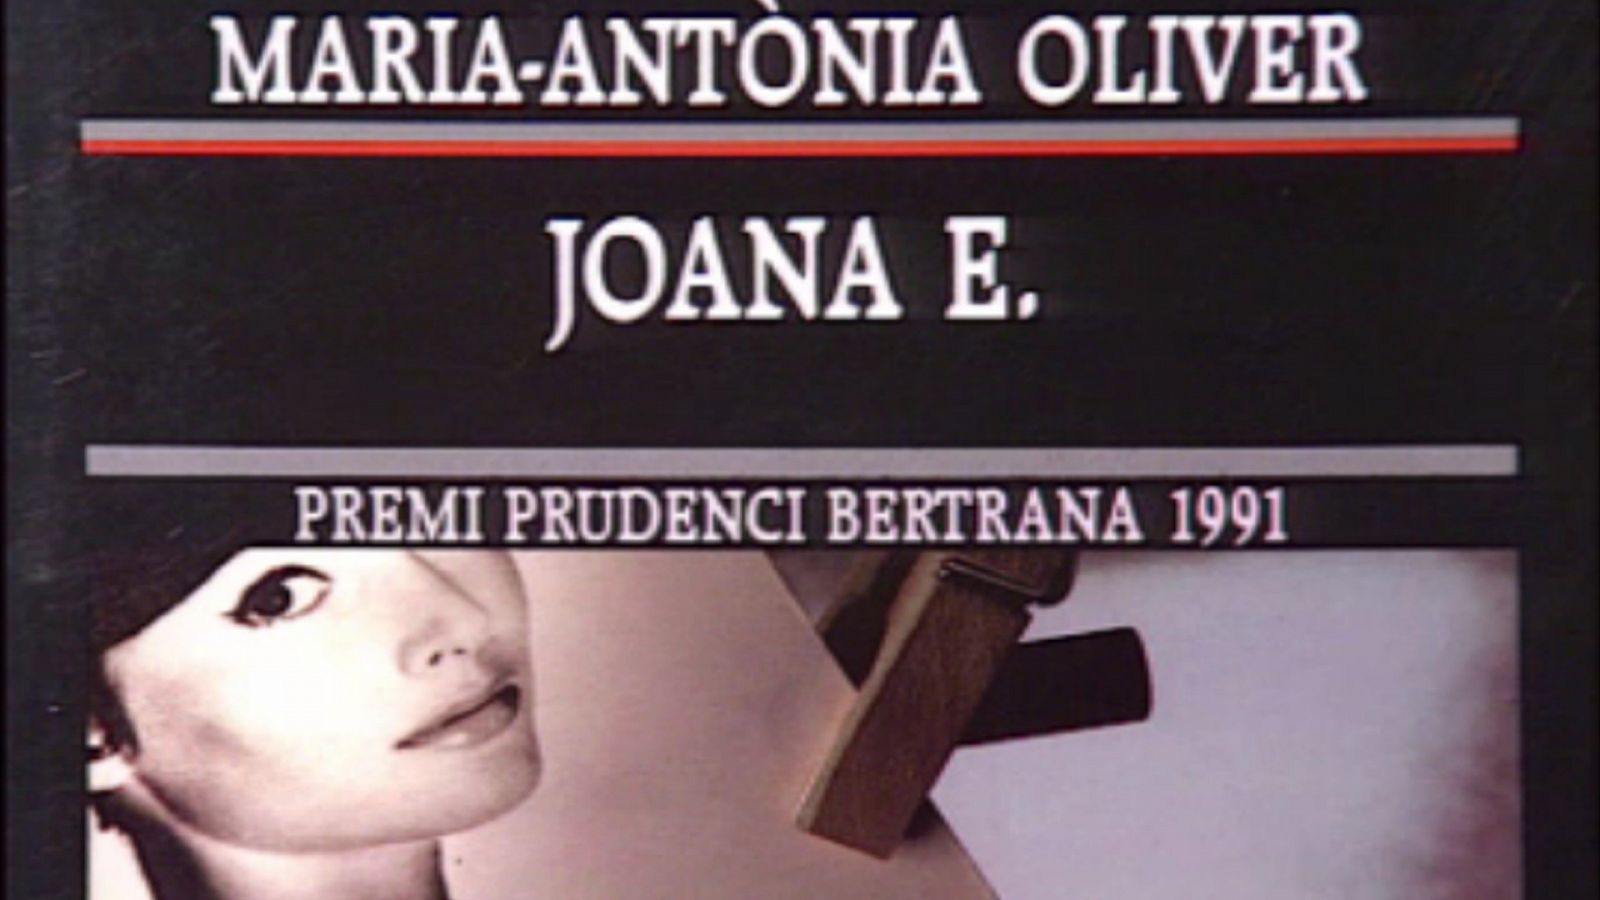 Arxiu TVE Catalunya - L'Odissea - Joana E., de Maria Antònia Oliver